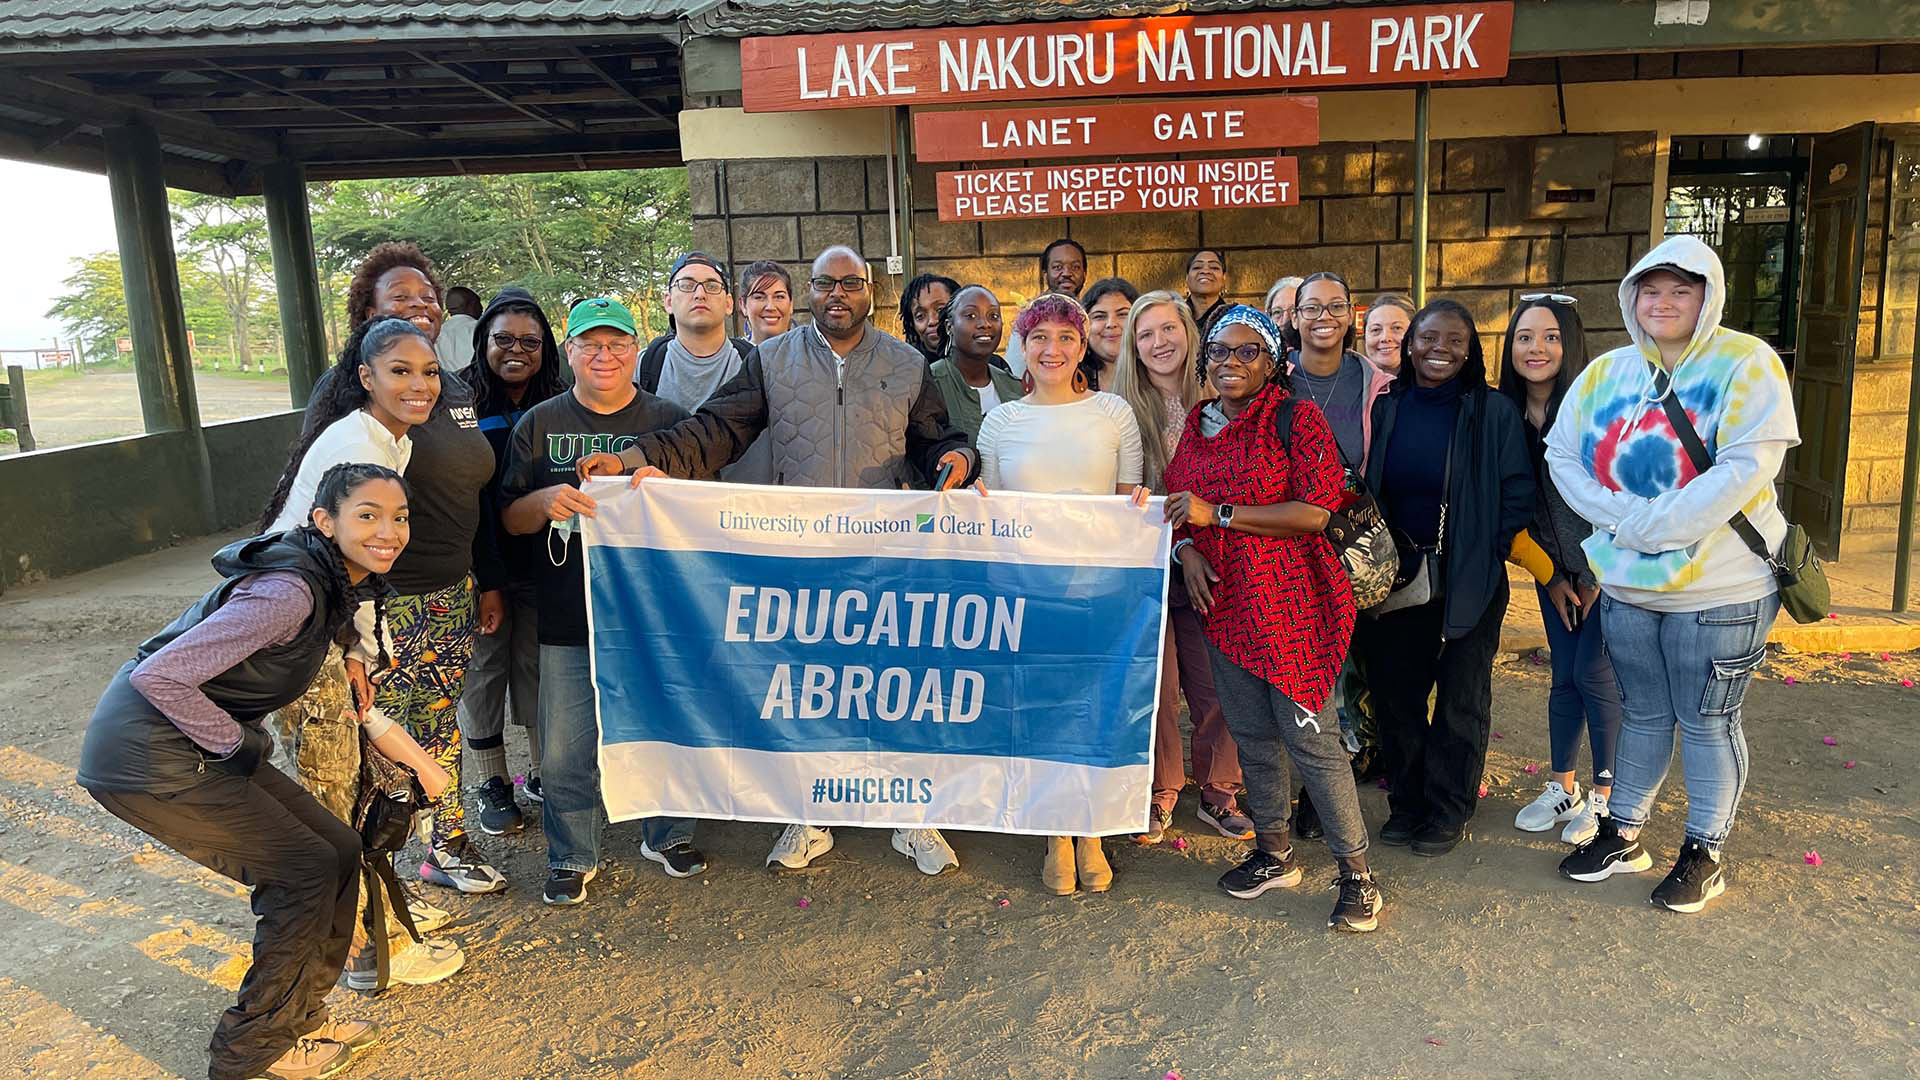 Group photo of UHCL students at Lake Nakuru National Park in Kenya